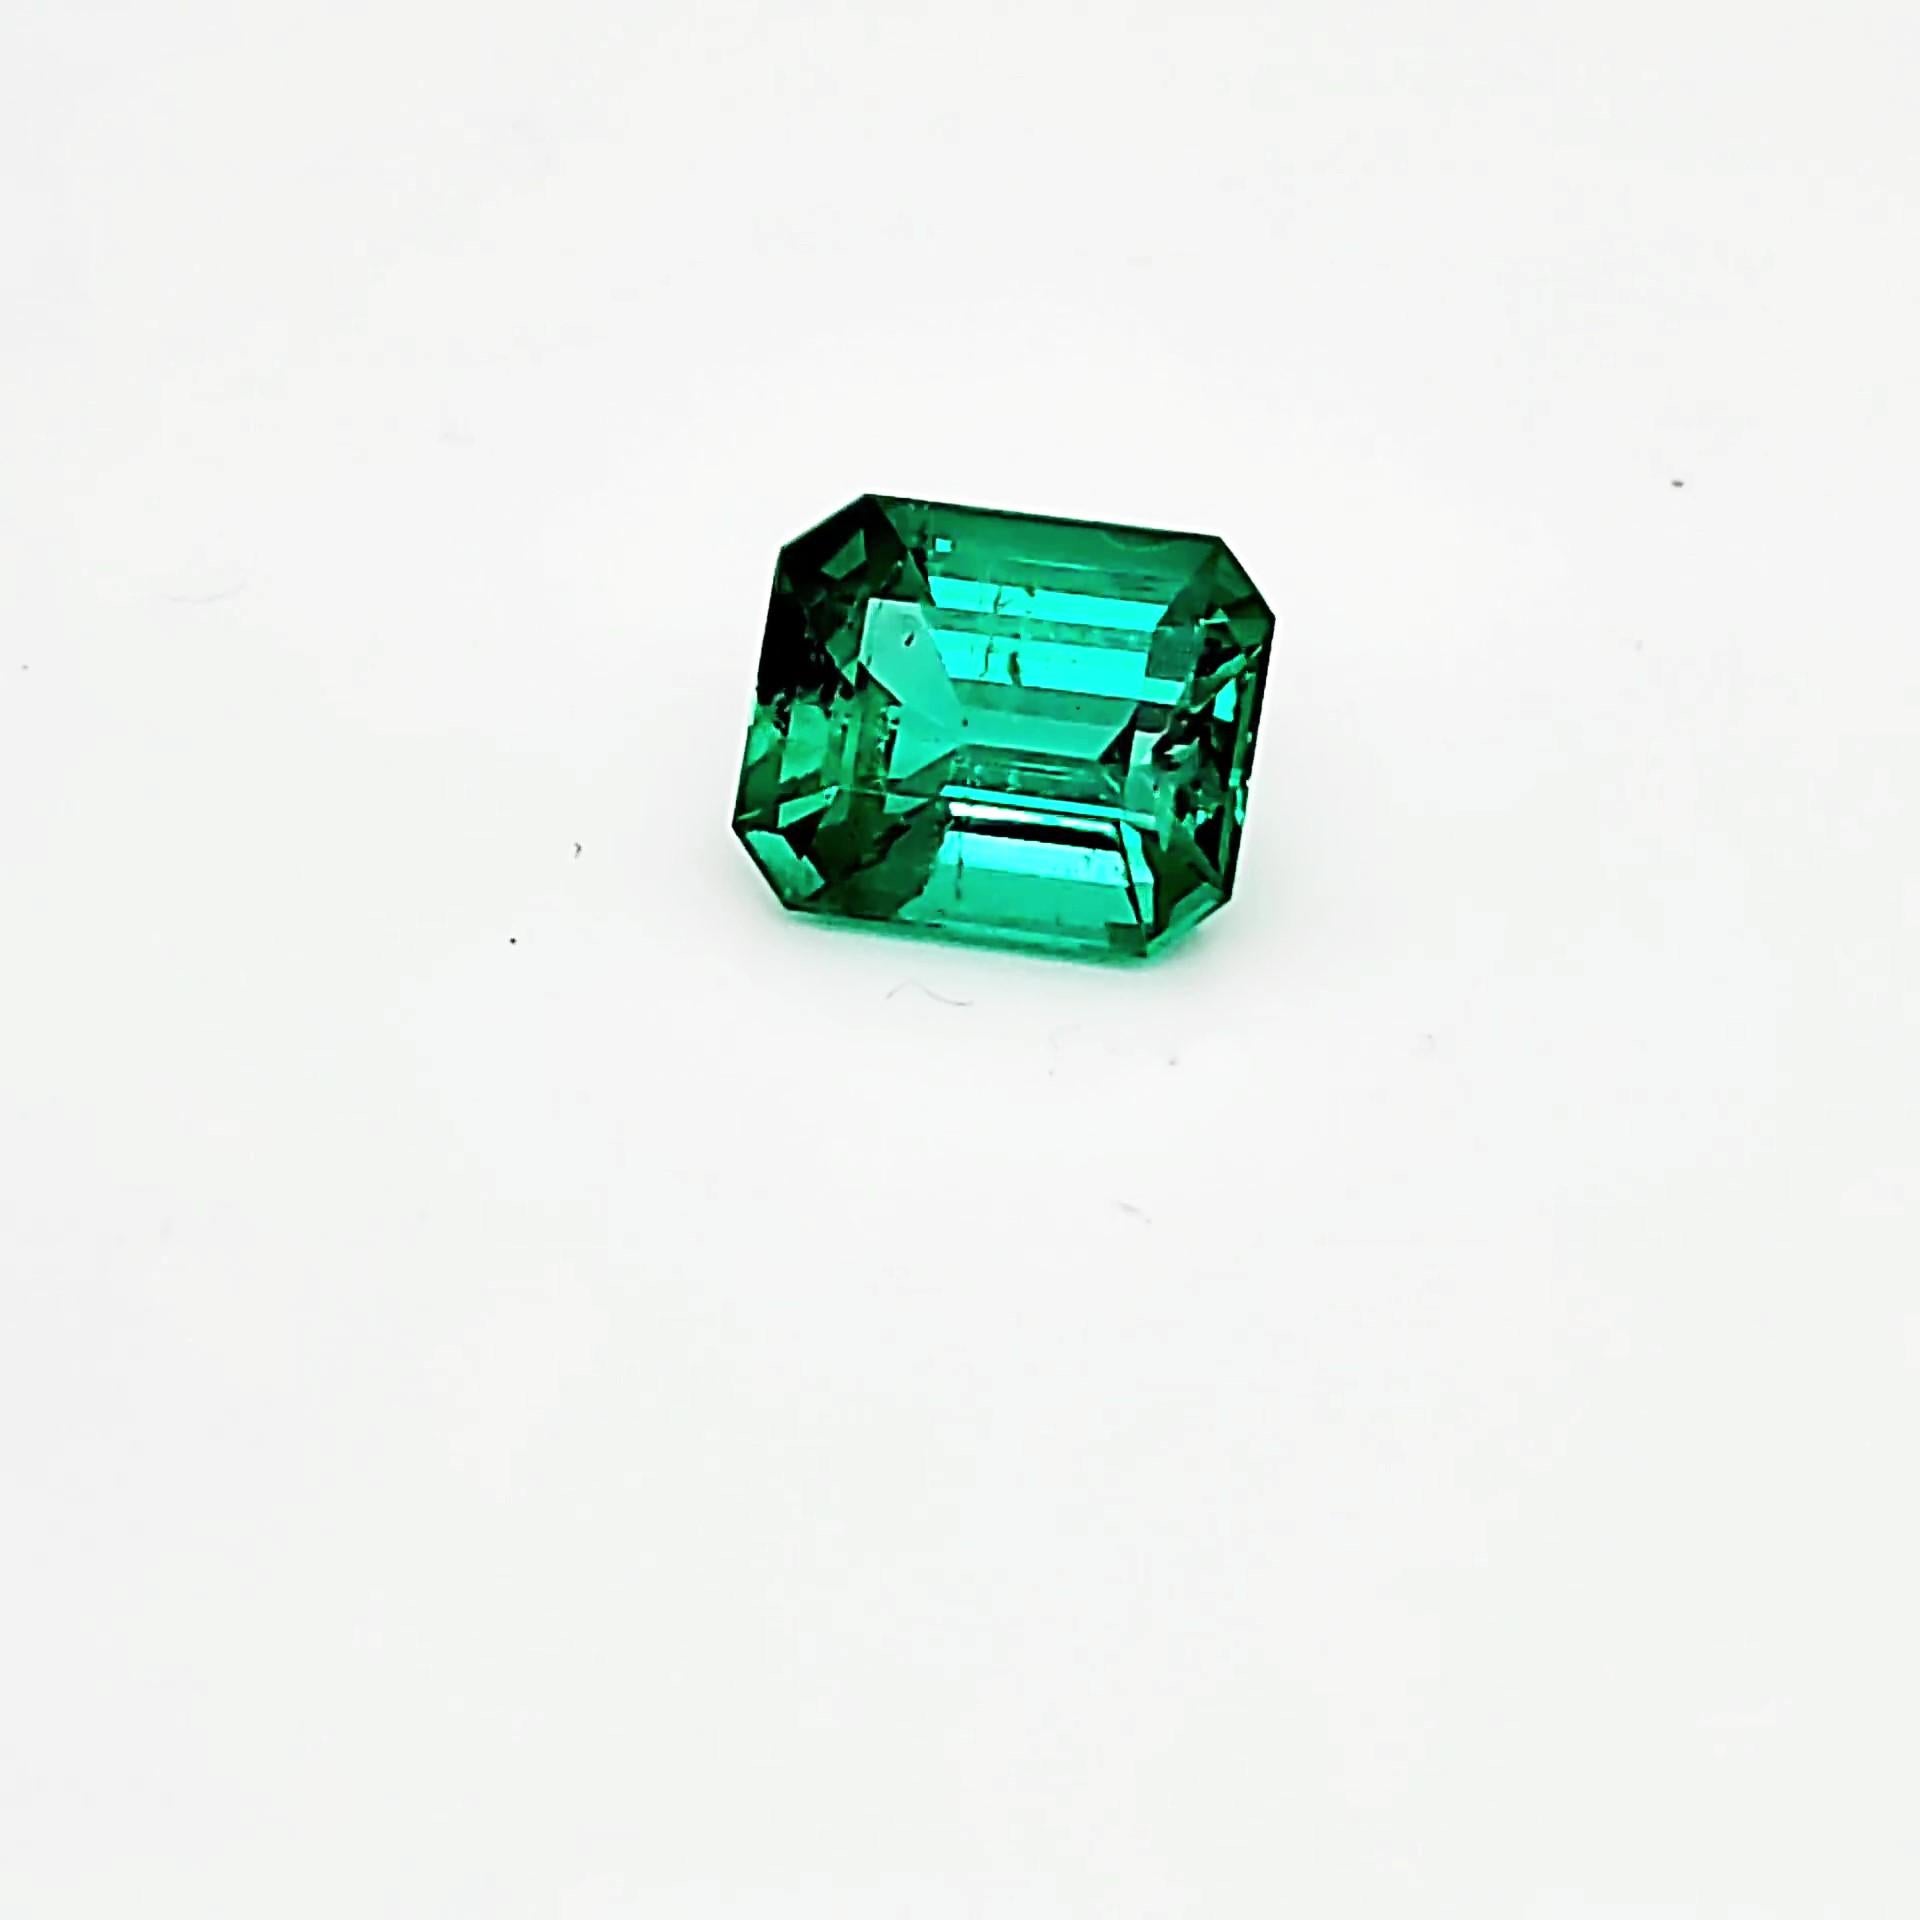 FERRUCCI 4,53 ct Smaragd, GIA zertifiziert atemberaubend sauberes Mineral, mit nur wenigen natürlichen Einschlüssen typisch für den Smaragd. 
Intensive grüne Farbe 